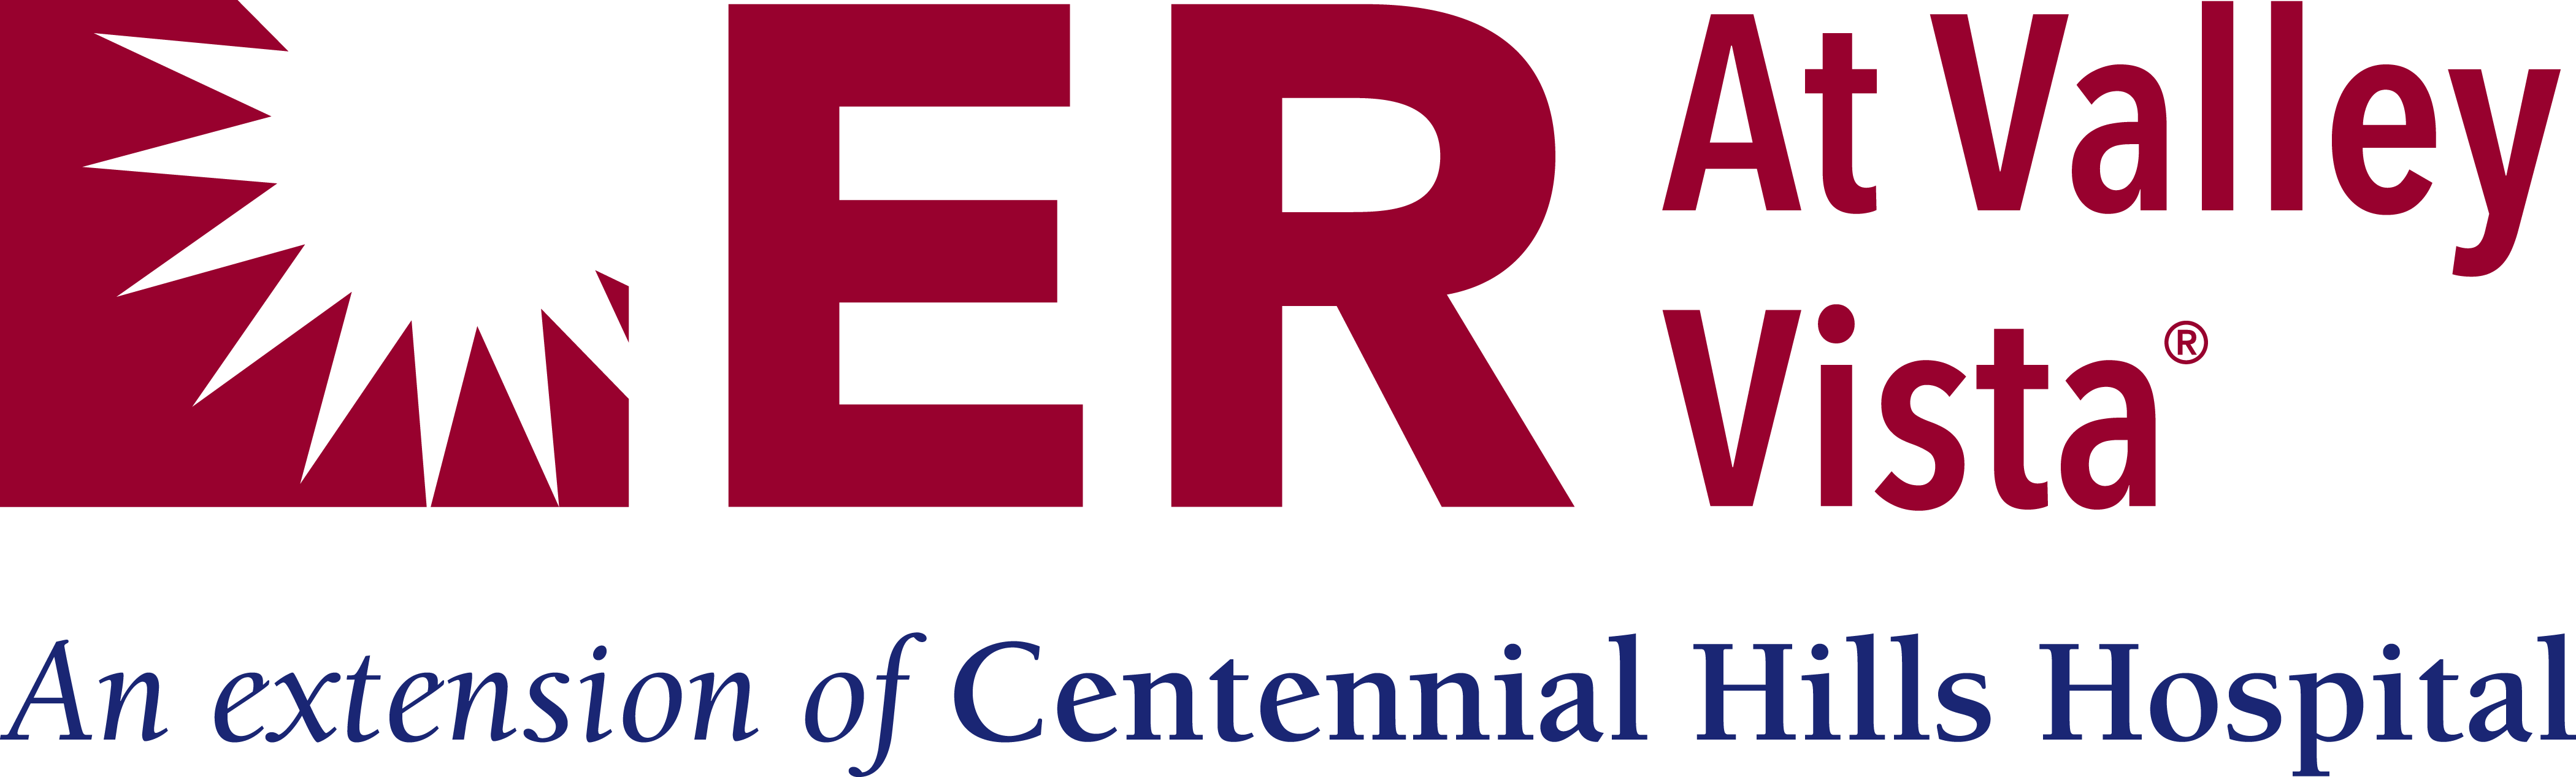 ER at Valley Vista Logo